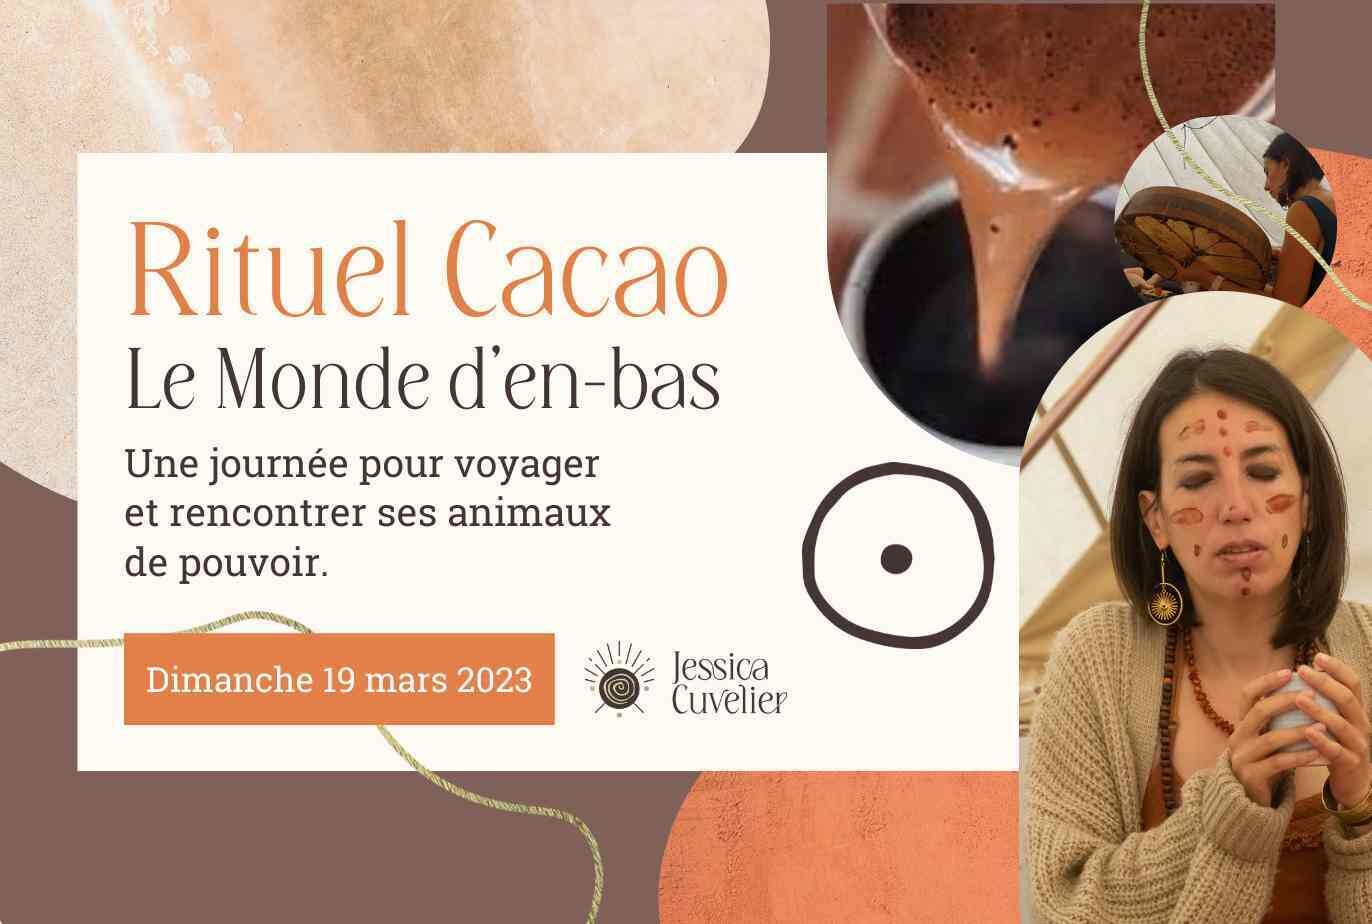 Rituel cacao - Le Monde d'en bas 19/03